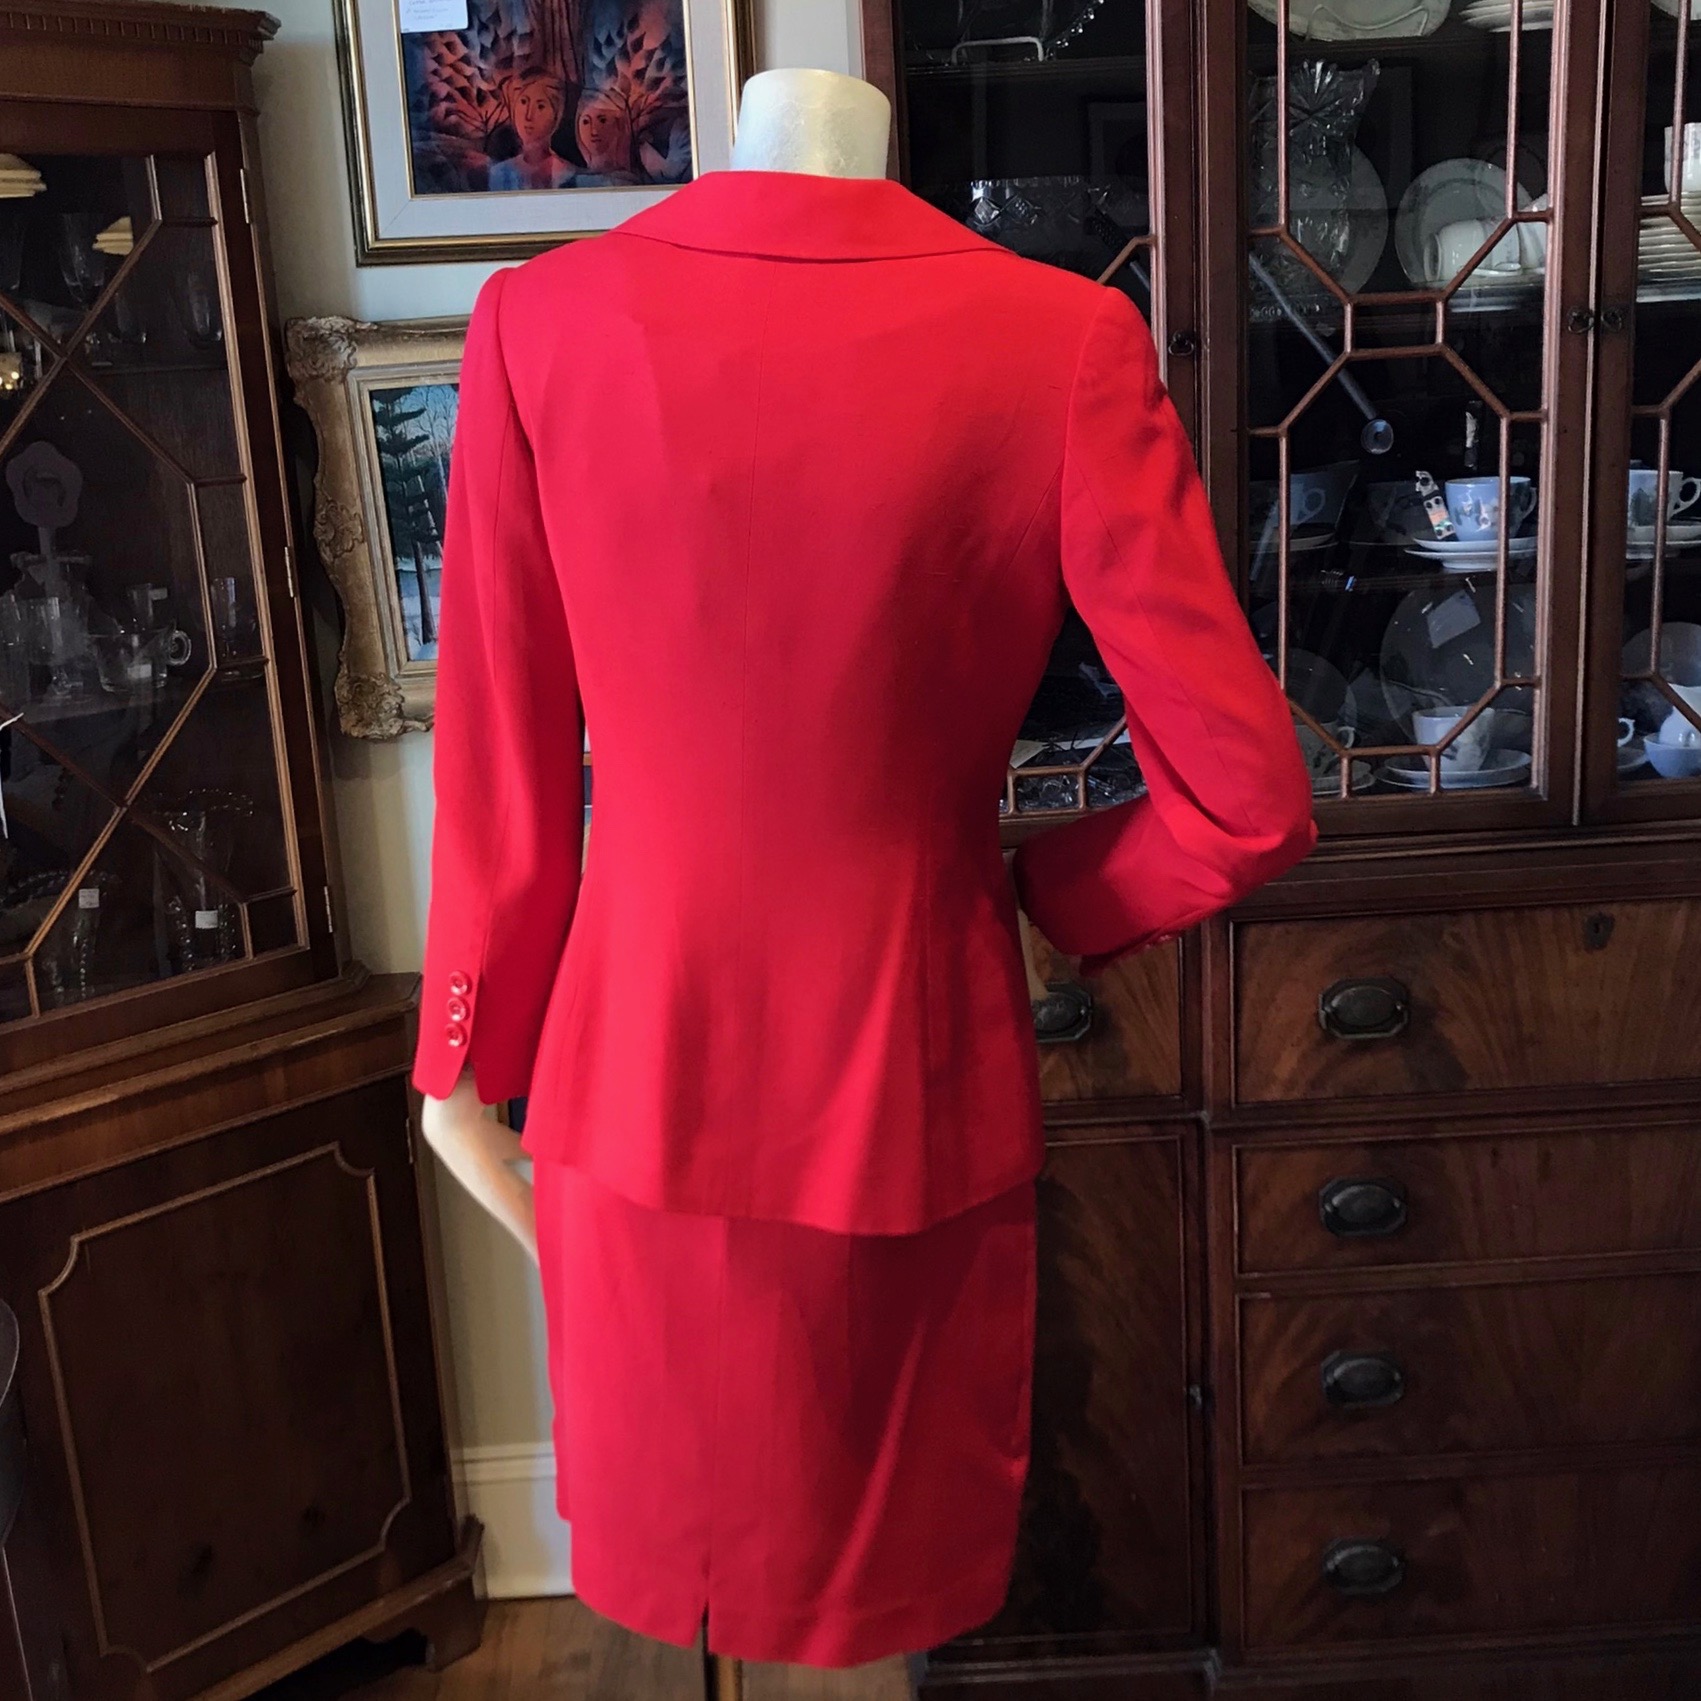 Red Italian Suit (1970s)